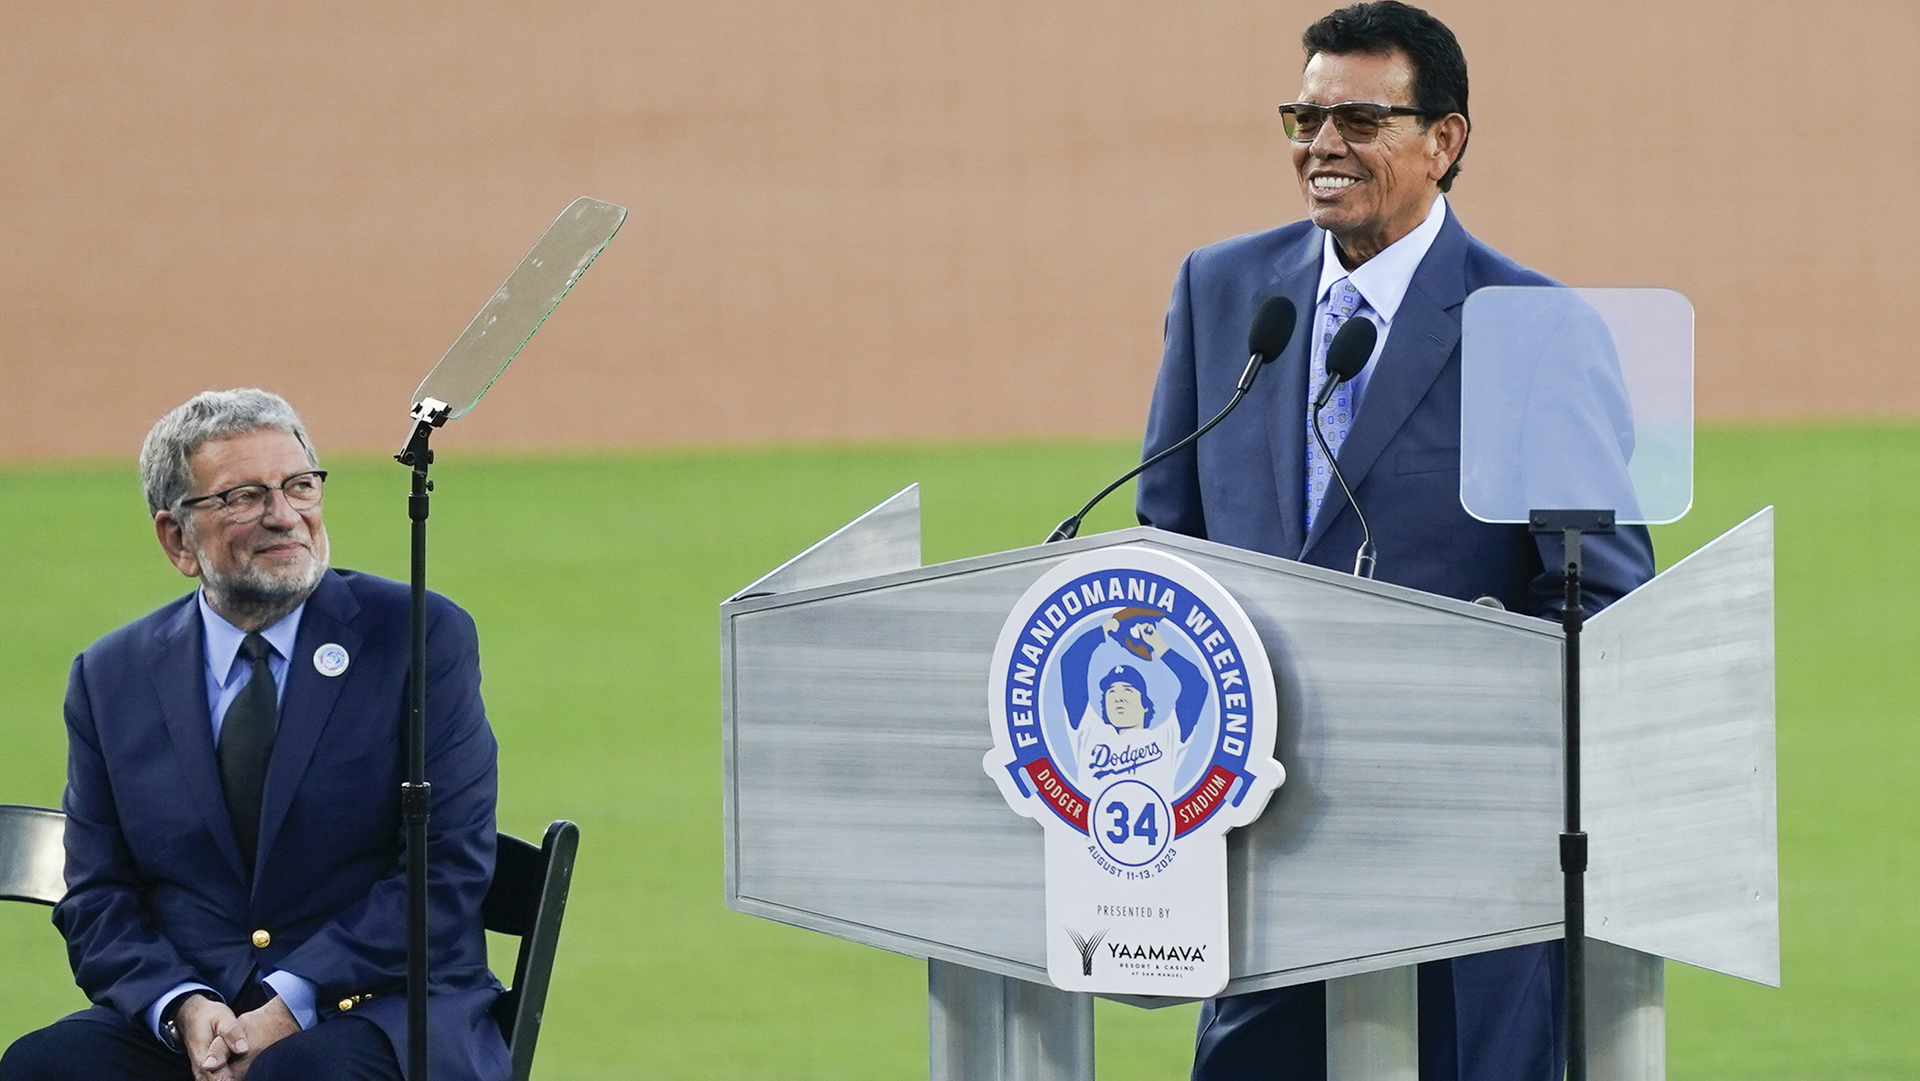 Dodgers will retire Fernando Valenzuela's number 34 at Dodger